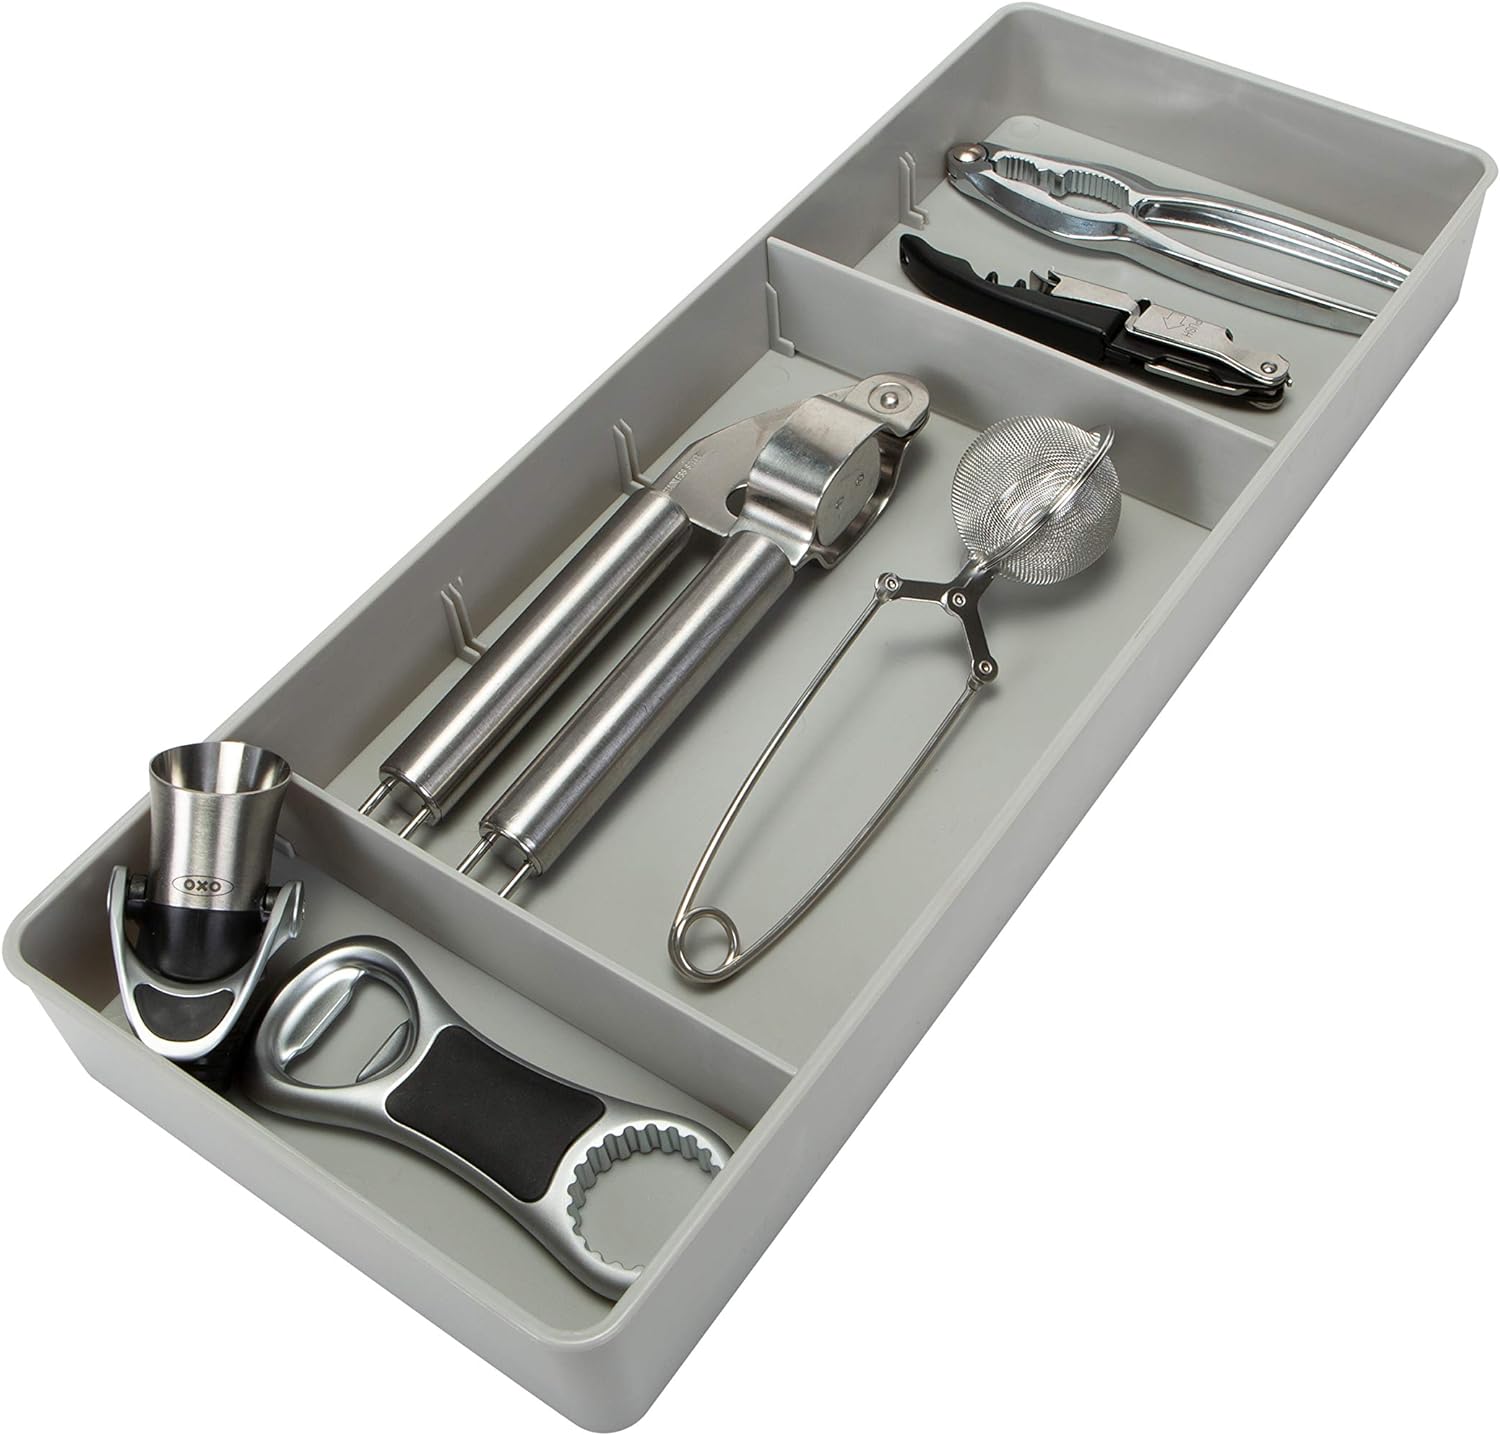 Kitchen Details 3 Compartment Adjustable Drawer Organizer | Utensil & Gadget Holder Tray | Cabinet & Storage Organization | Office Desk | Bathroom Accessories | Grey